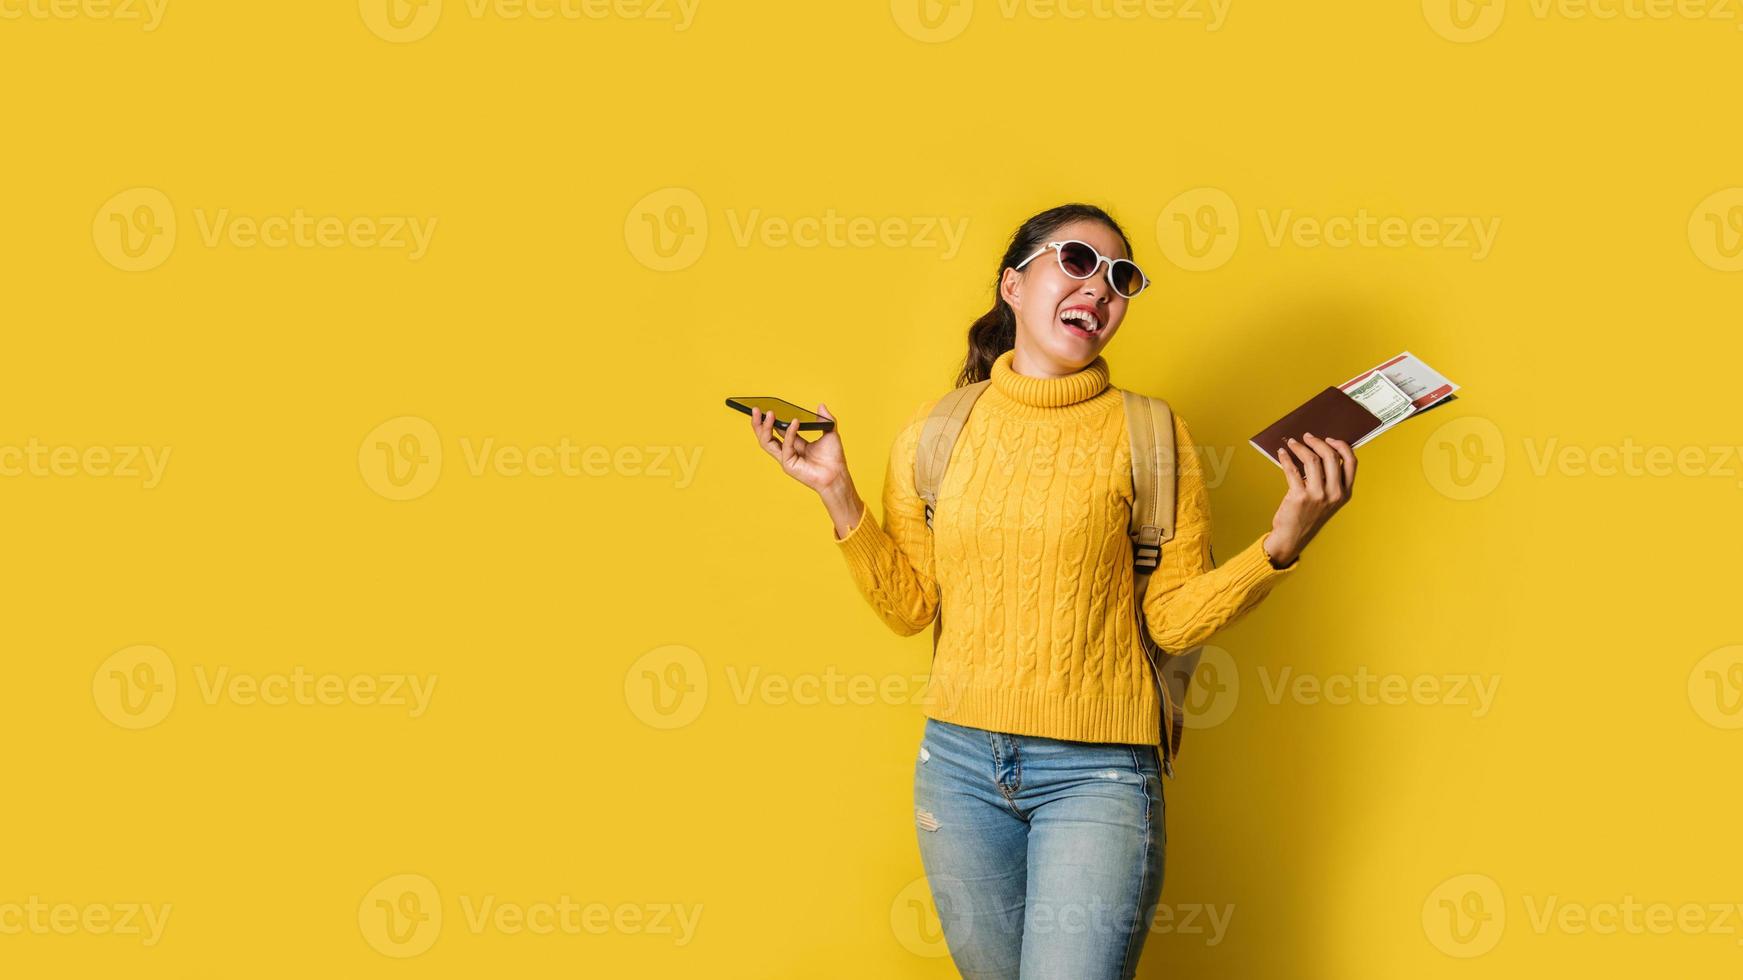 femme voyageuse avec valise, tenant un passeport et un billet dans la main et des téléphones portables sur fond jaune. concept de voyage autour du monde. sac à dos de voyage photo